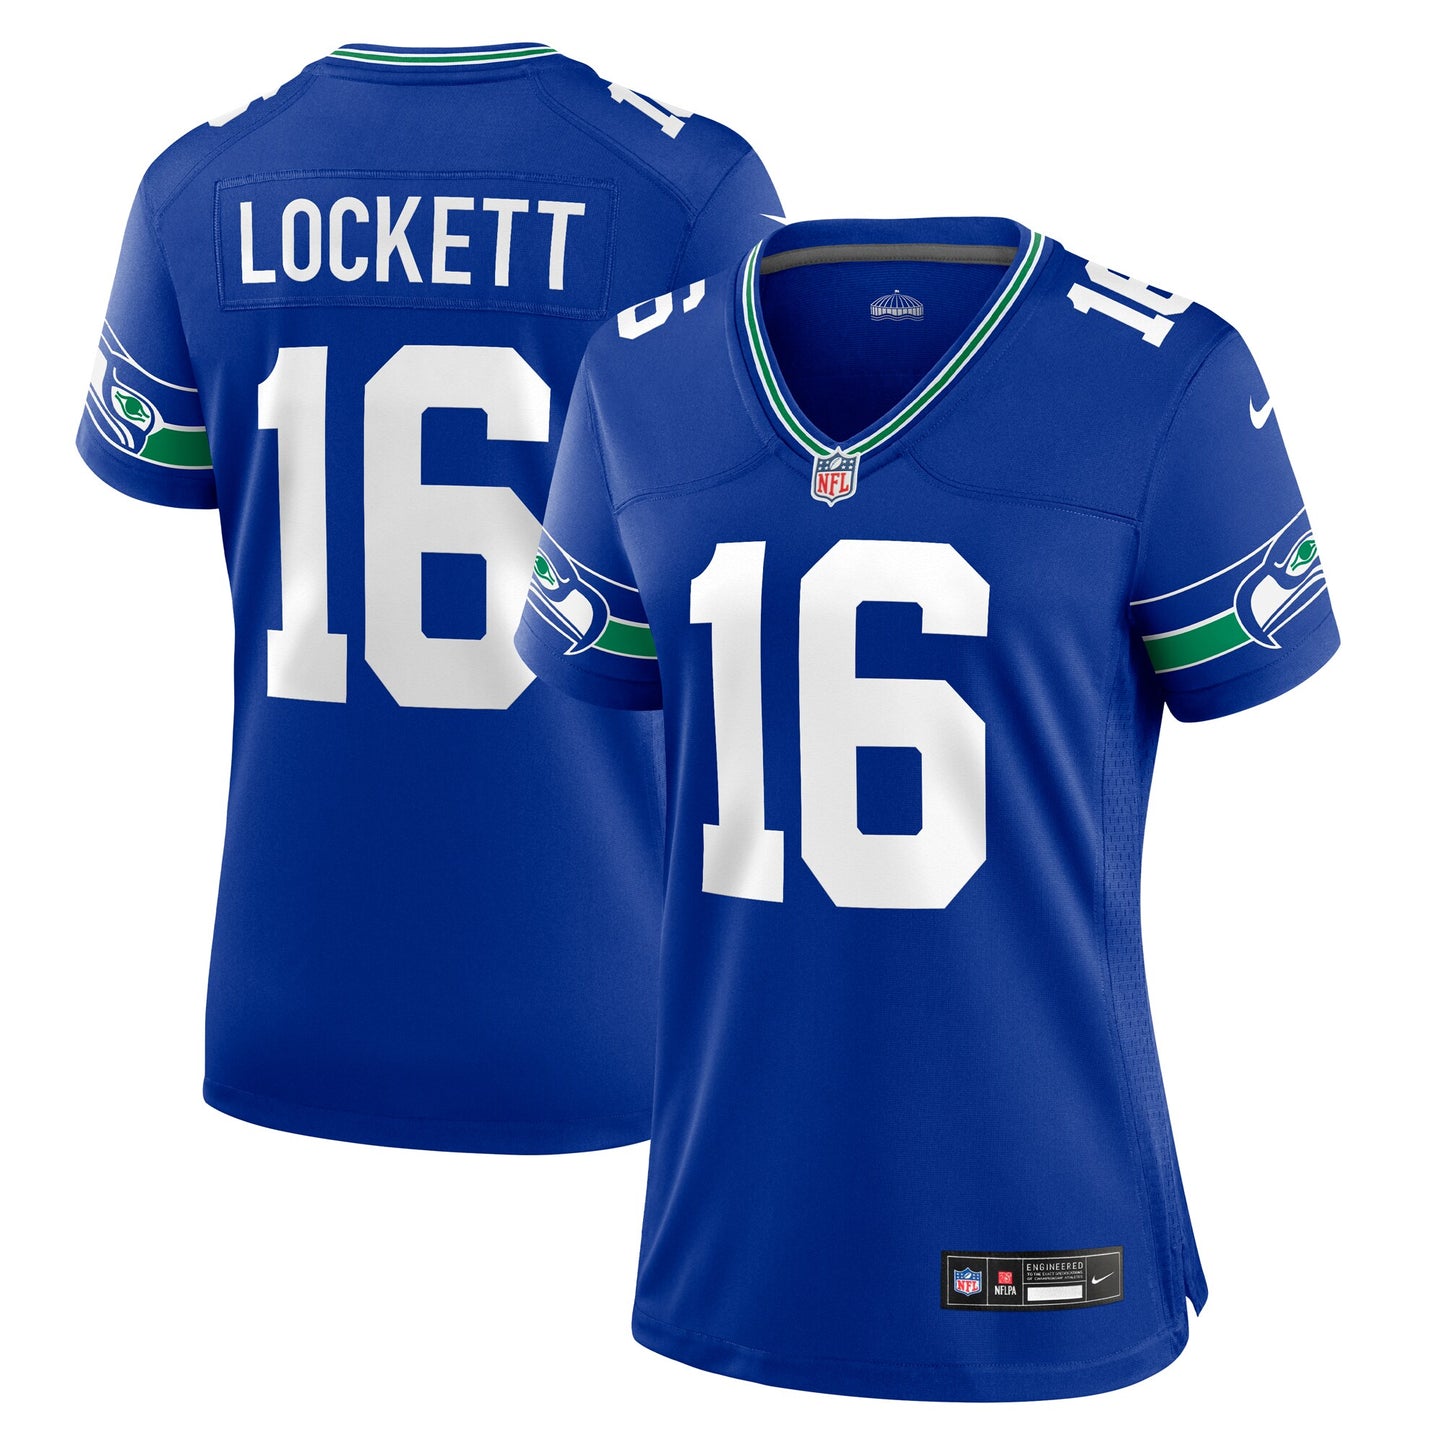 Tyler Lockett Seattle Seahawks Nike Women's Player Jersey - Royal